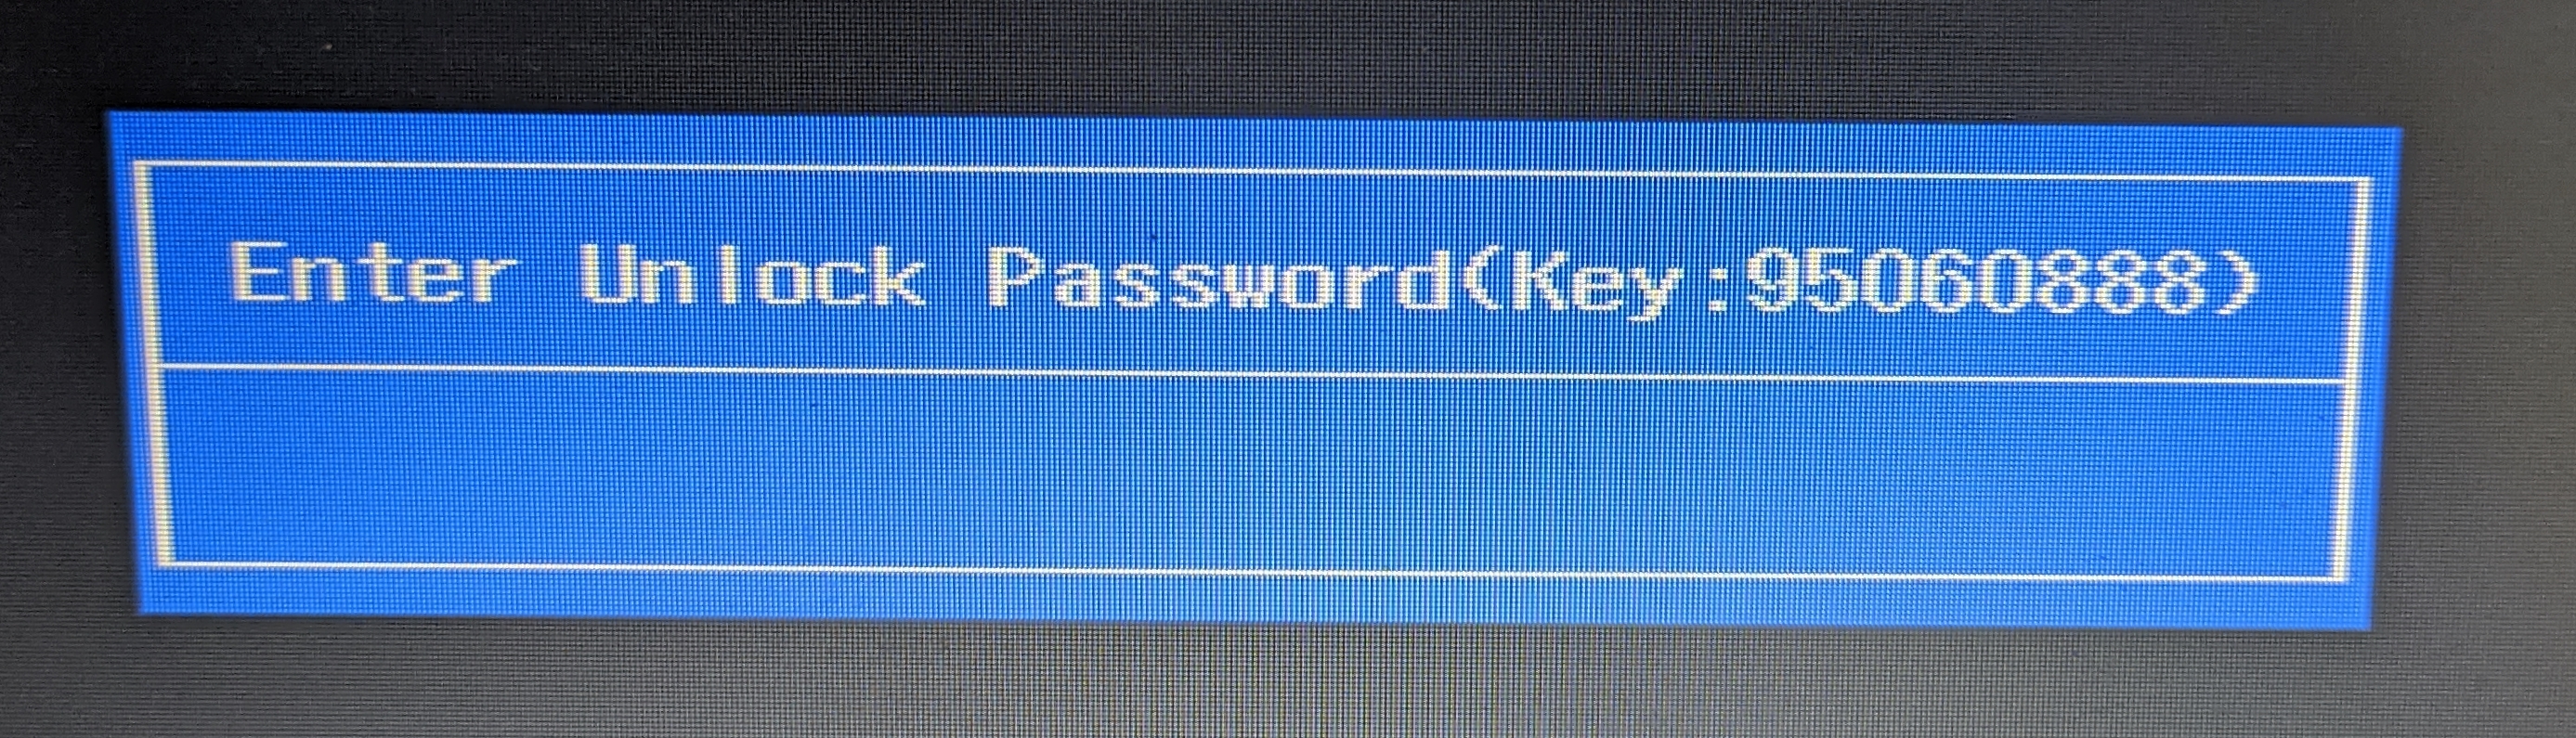 Enter password. Enter password на ноутбуке. Ноутбук пишет enter password. Enter password при включении компьютера как убрать.